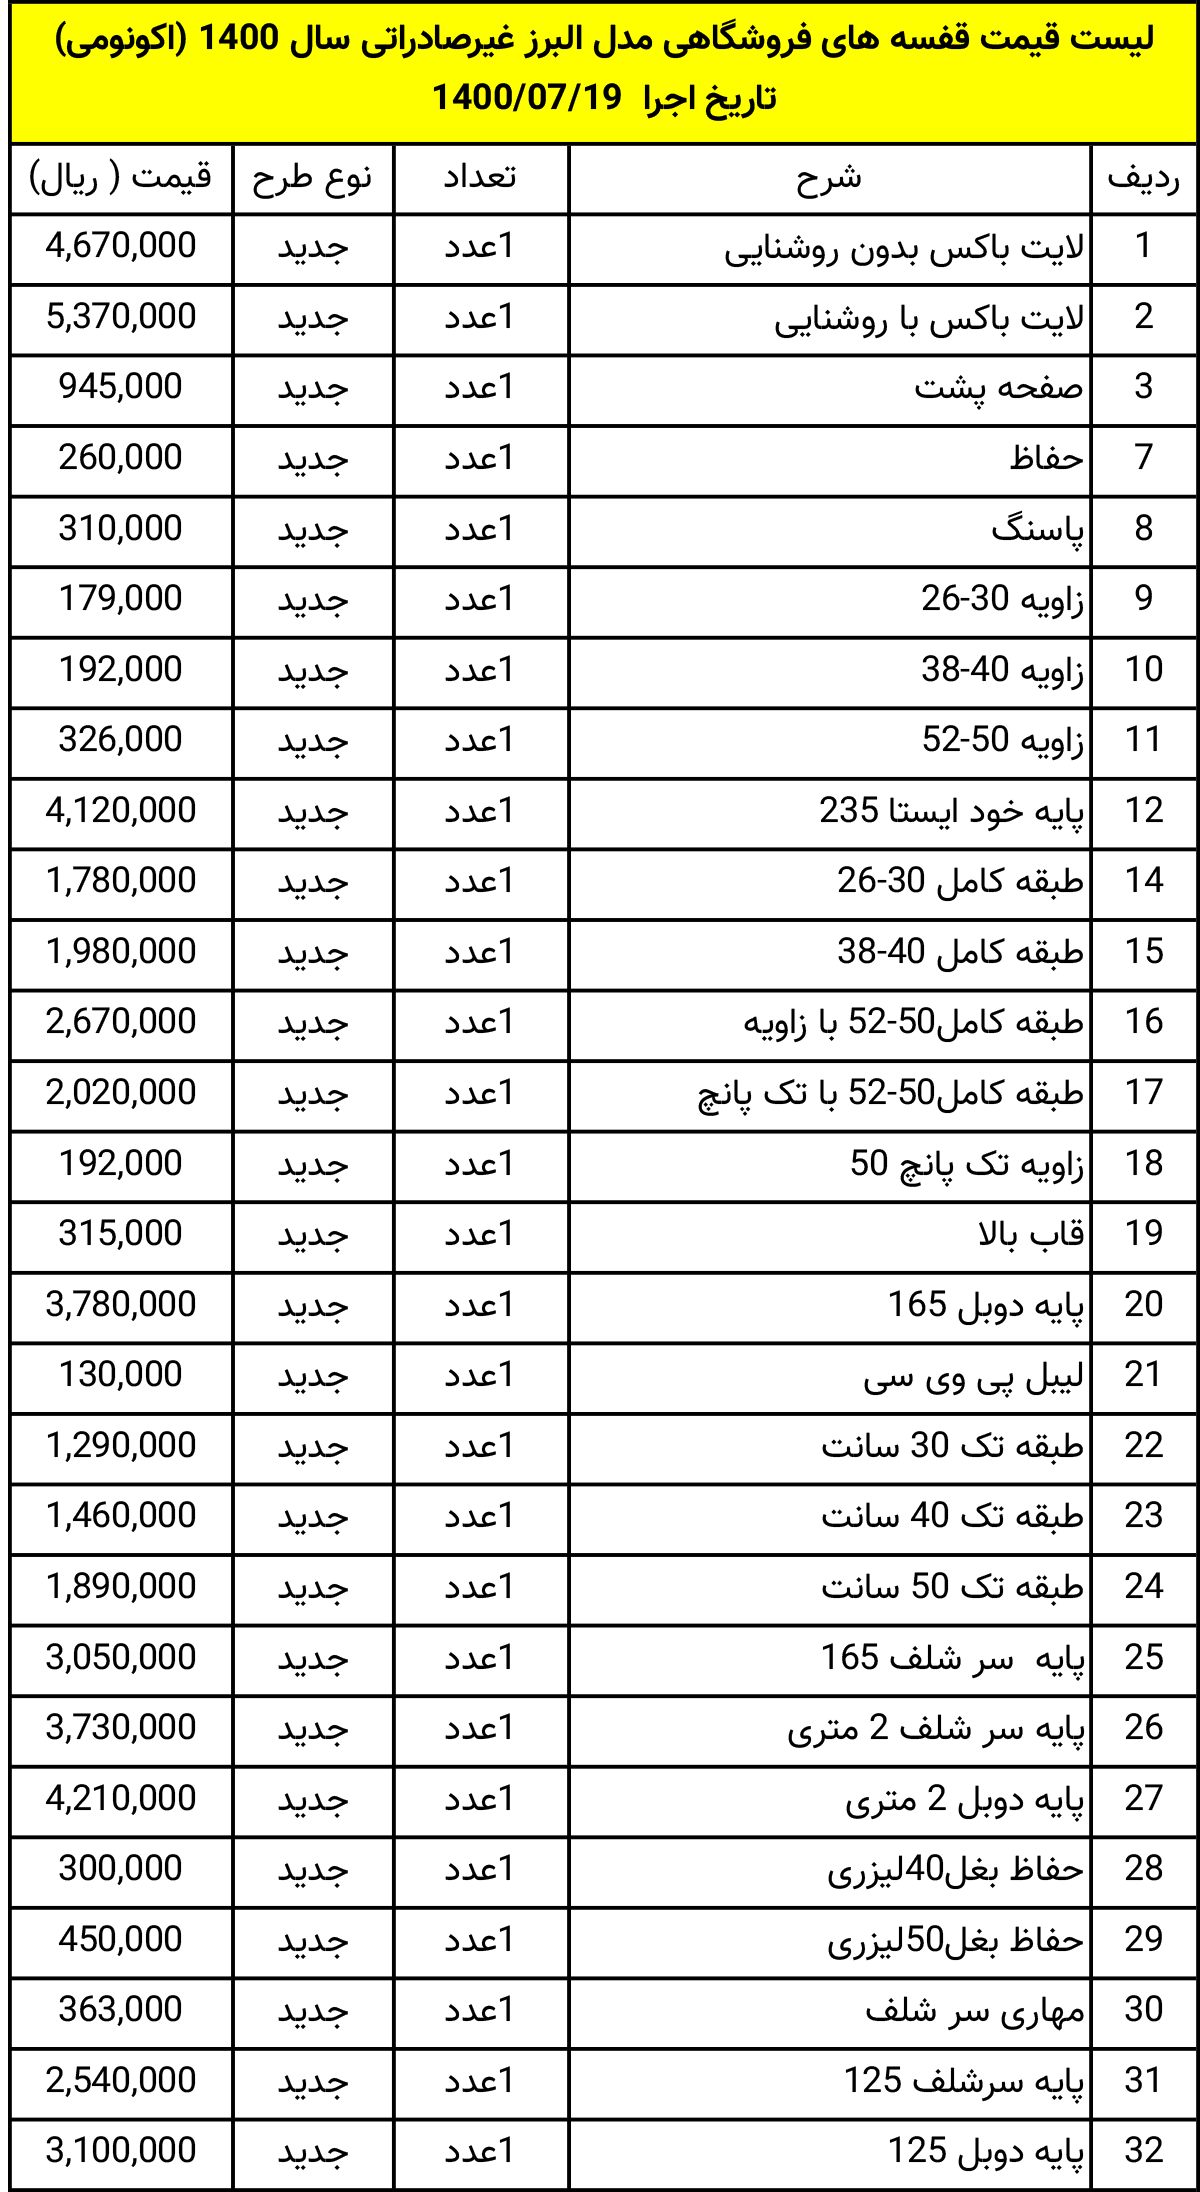 لیست قیمت تجهیزات فروشگاهی اکونومی شرکت رادان صنعت شرق سال 1400 تاریخ 1400/07/19